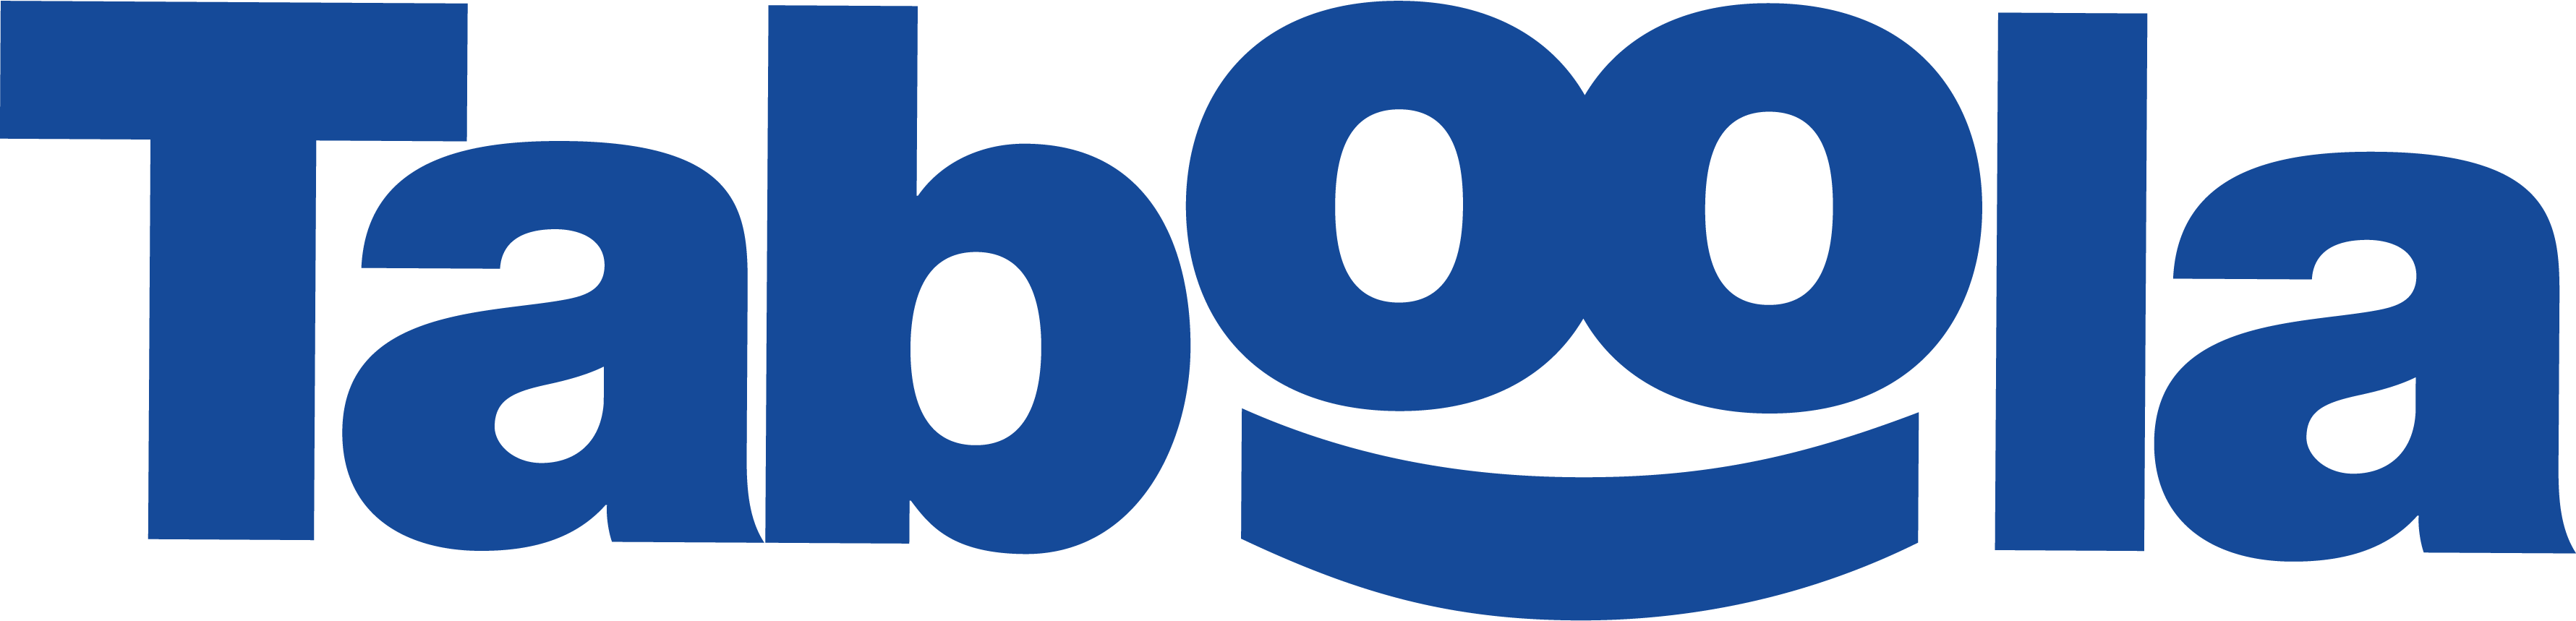 taboola_logo-new-large